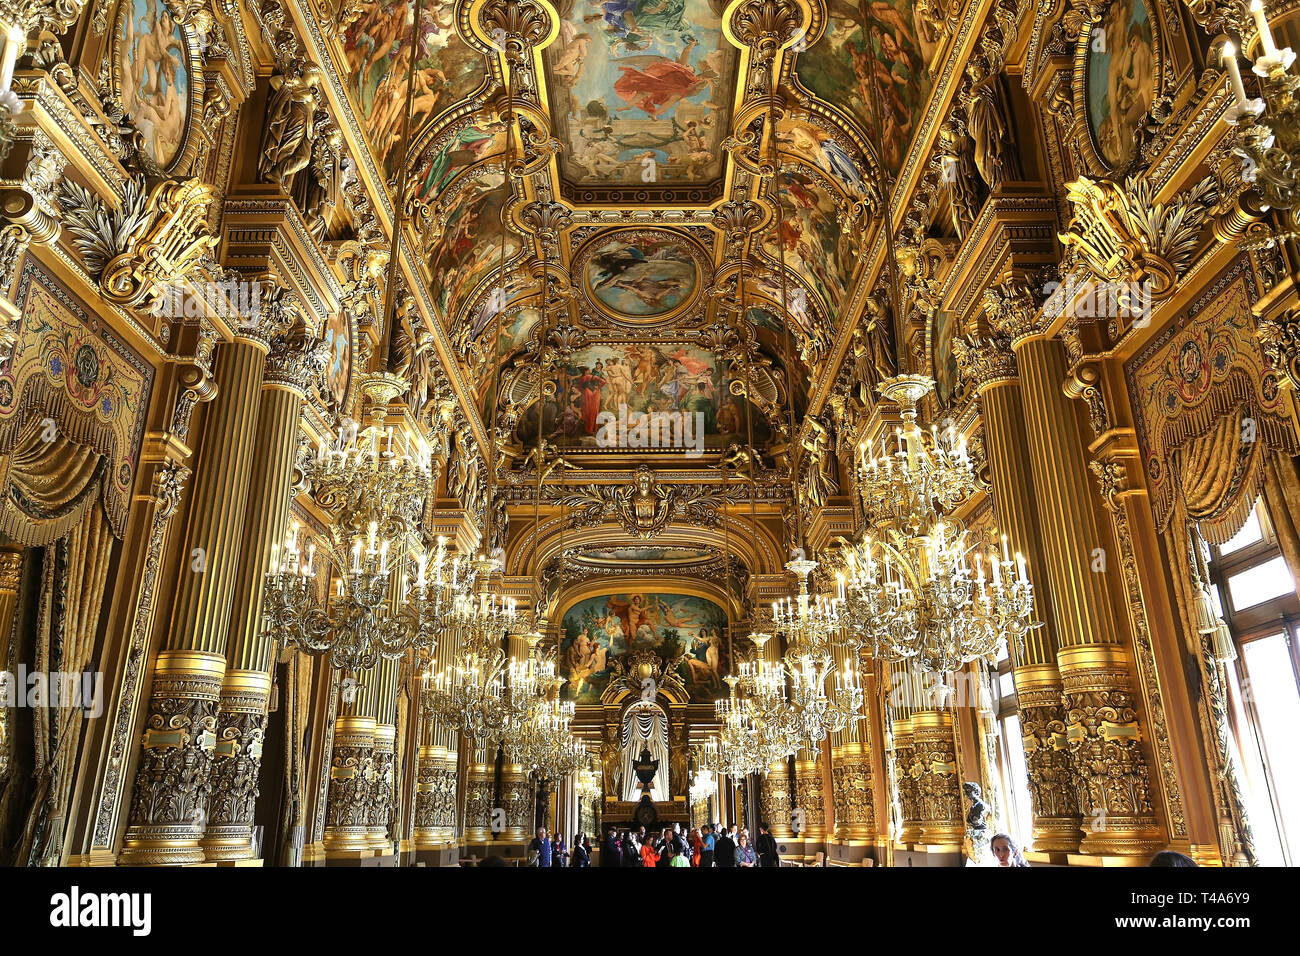 París, Francia, 14 de marzo de 2017 : interiores, frescos y detalles arquitectónicos del Palacio Garnier, Ópera de París, 14 de marzo de 2017 en París, Francia. Foto de stock